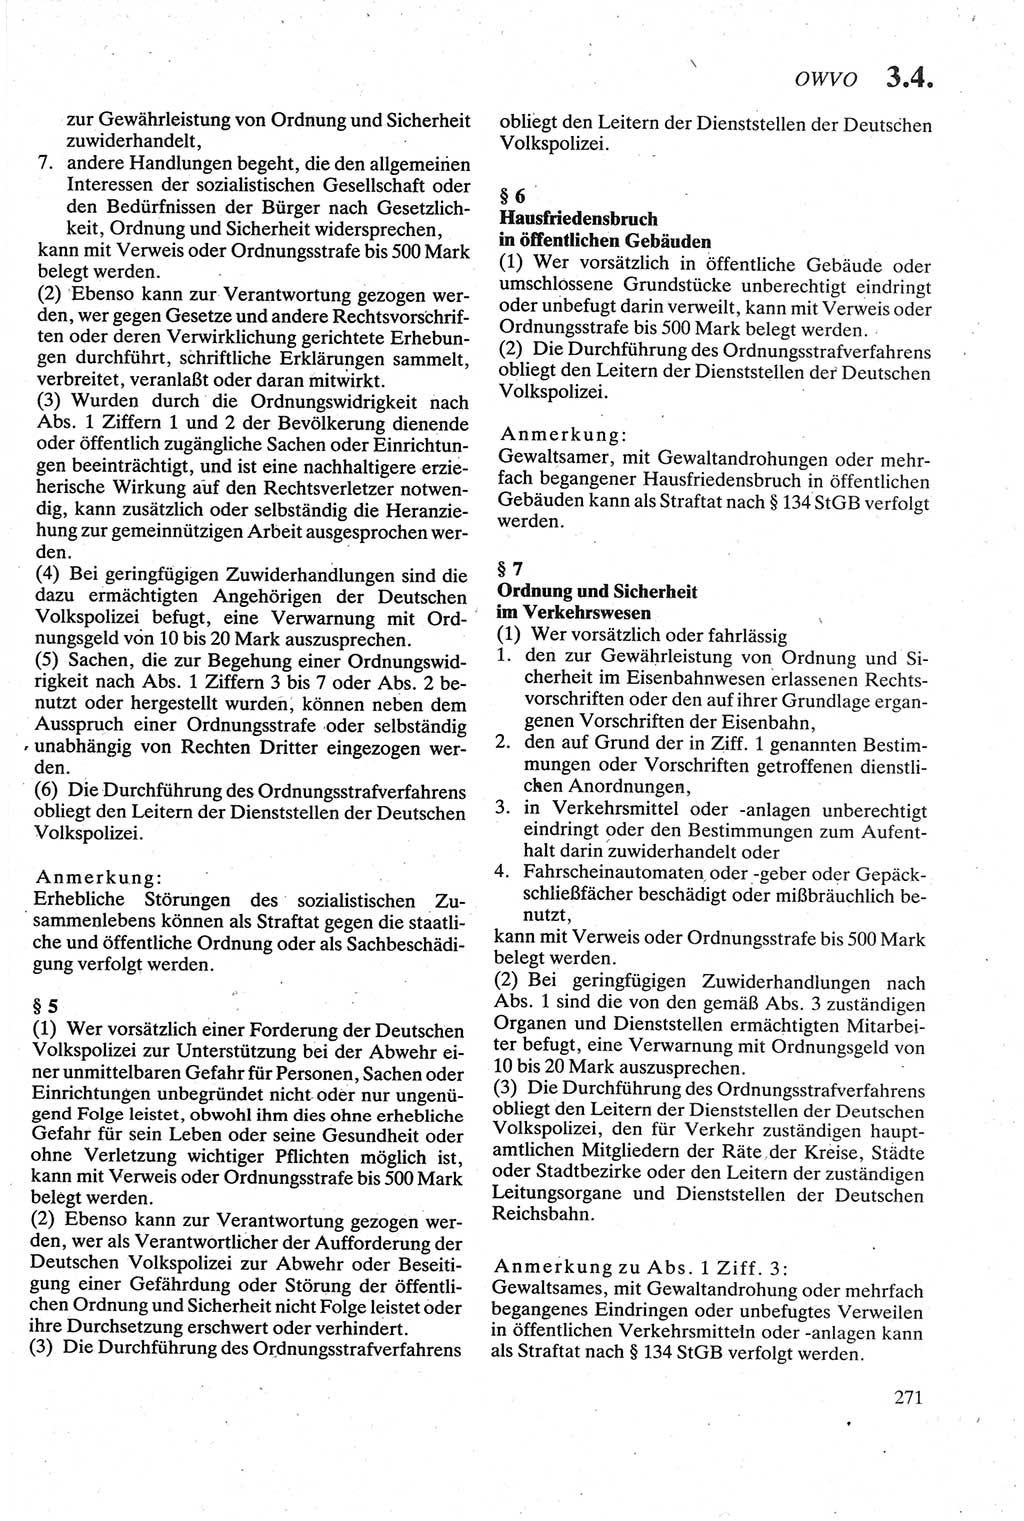 Strafgesetzbuch (StGB) der Deutschen Demokratischen Republik (DDR) sowie angrenzende Gesetze und Bestimmungen 1979, Seite 271 (StGB DDR Ges. Best. 1979, S. 271)